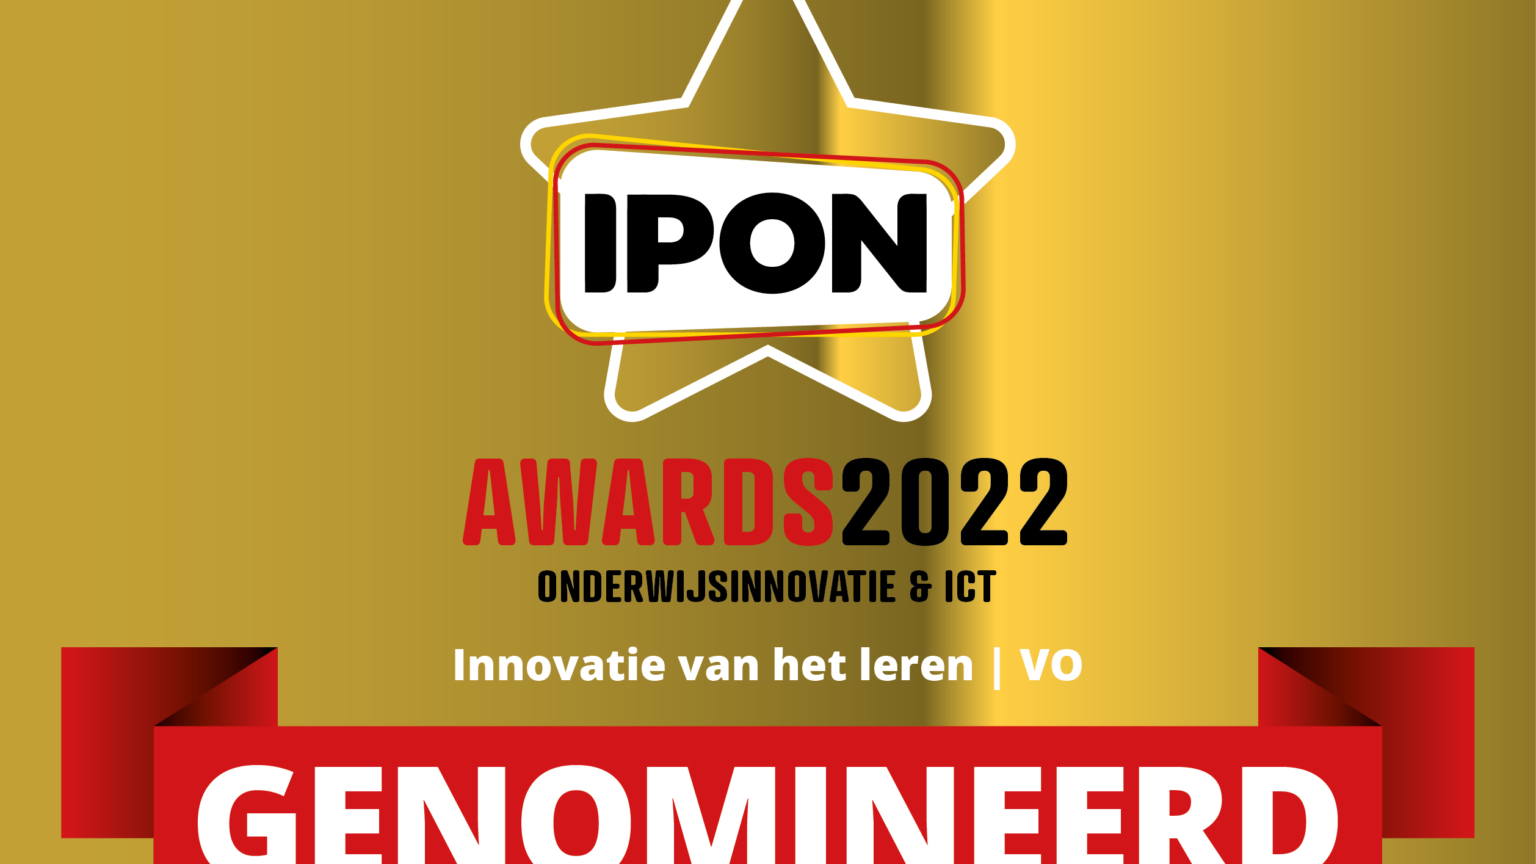 Proeftuin LOB genomineerd voor IPON innovatie Awards